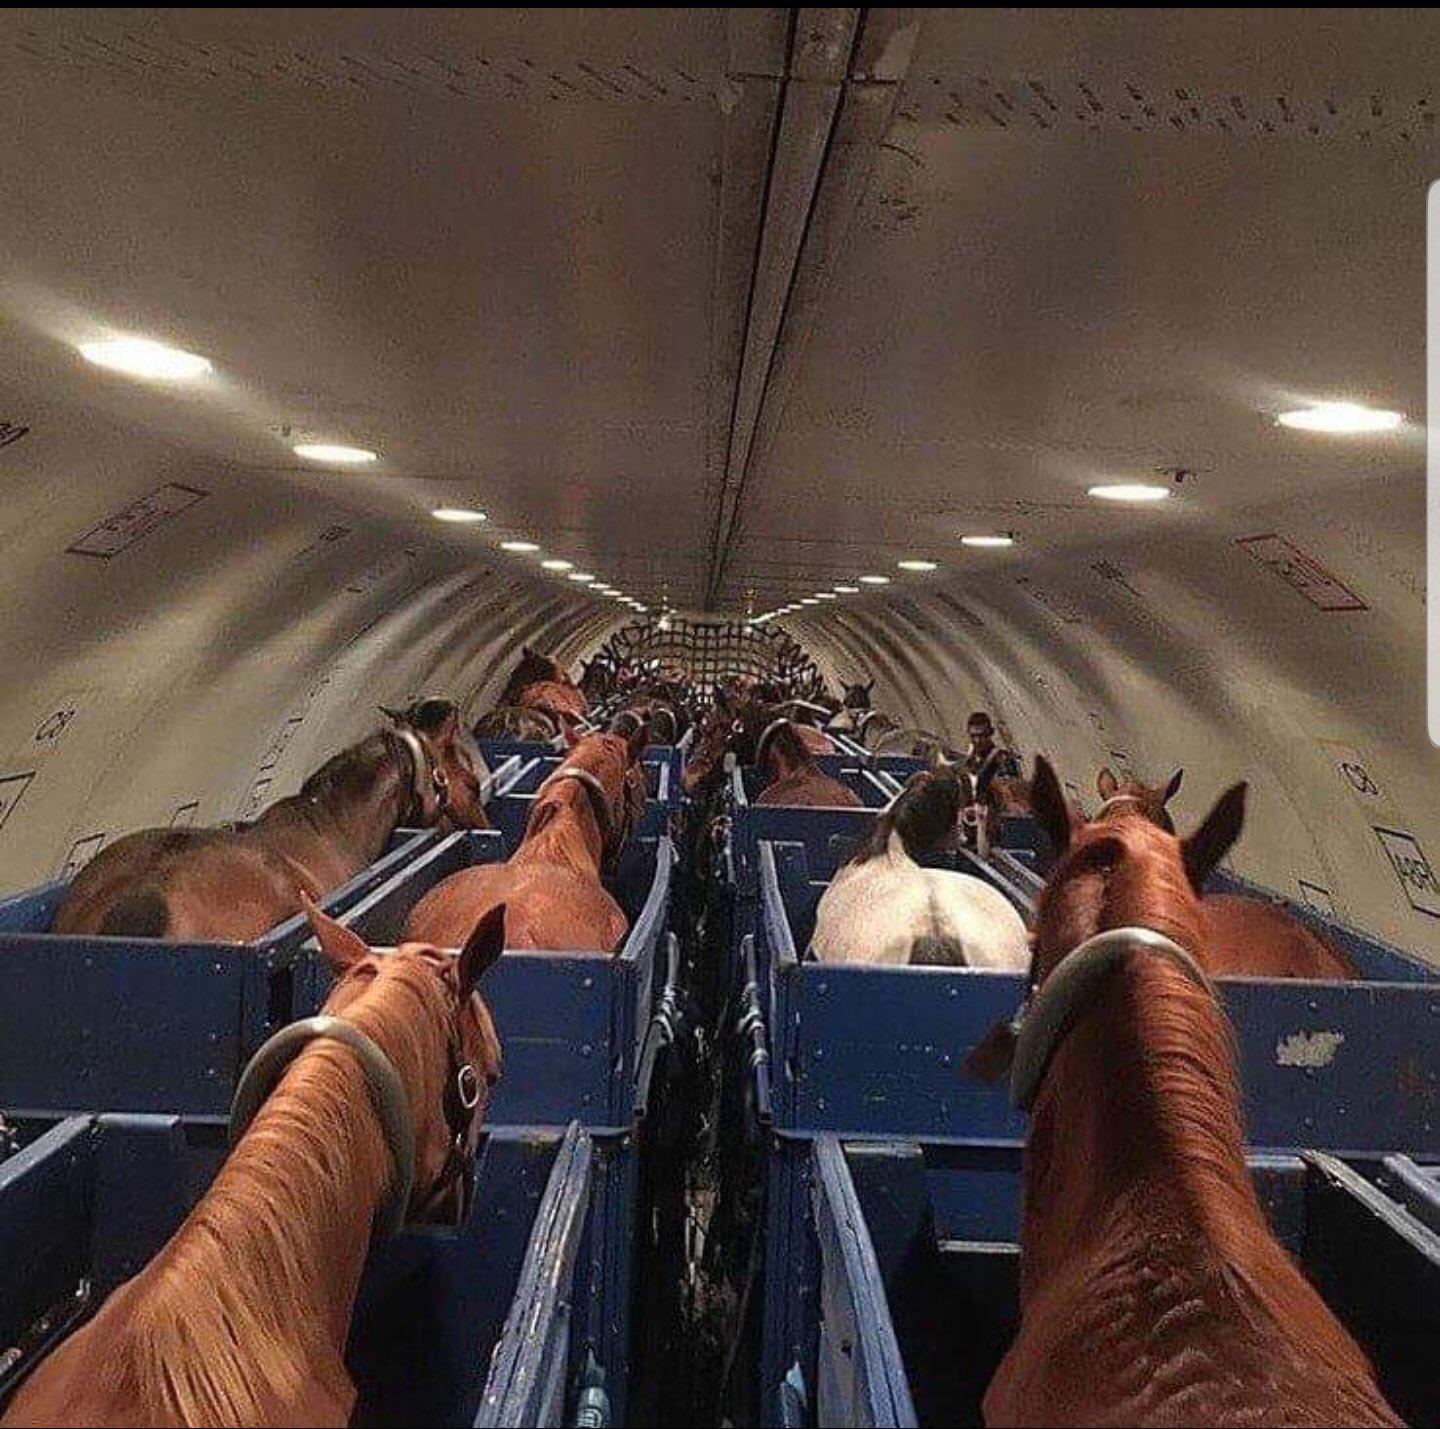 Something something horses on a plane...